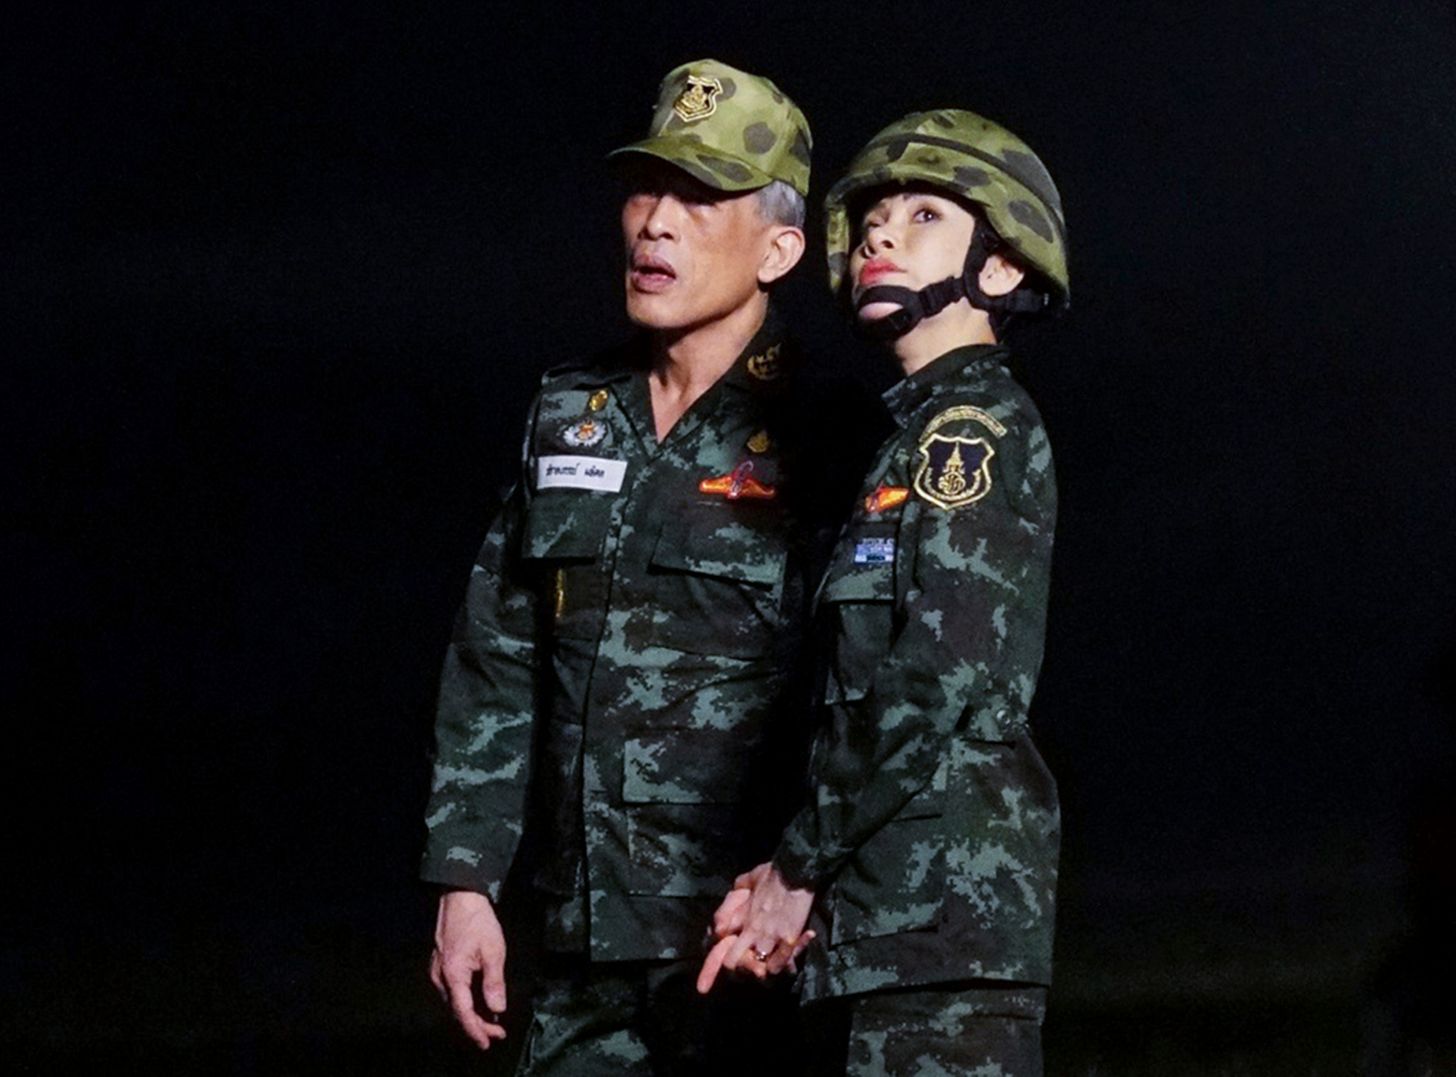 Thaise koning verrast met opvallende actie